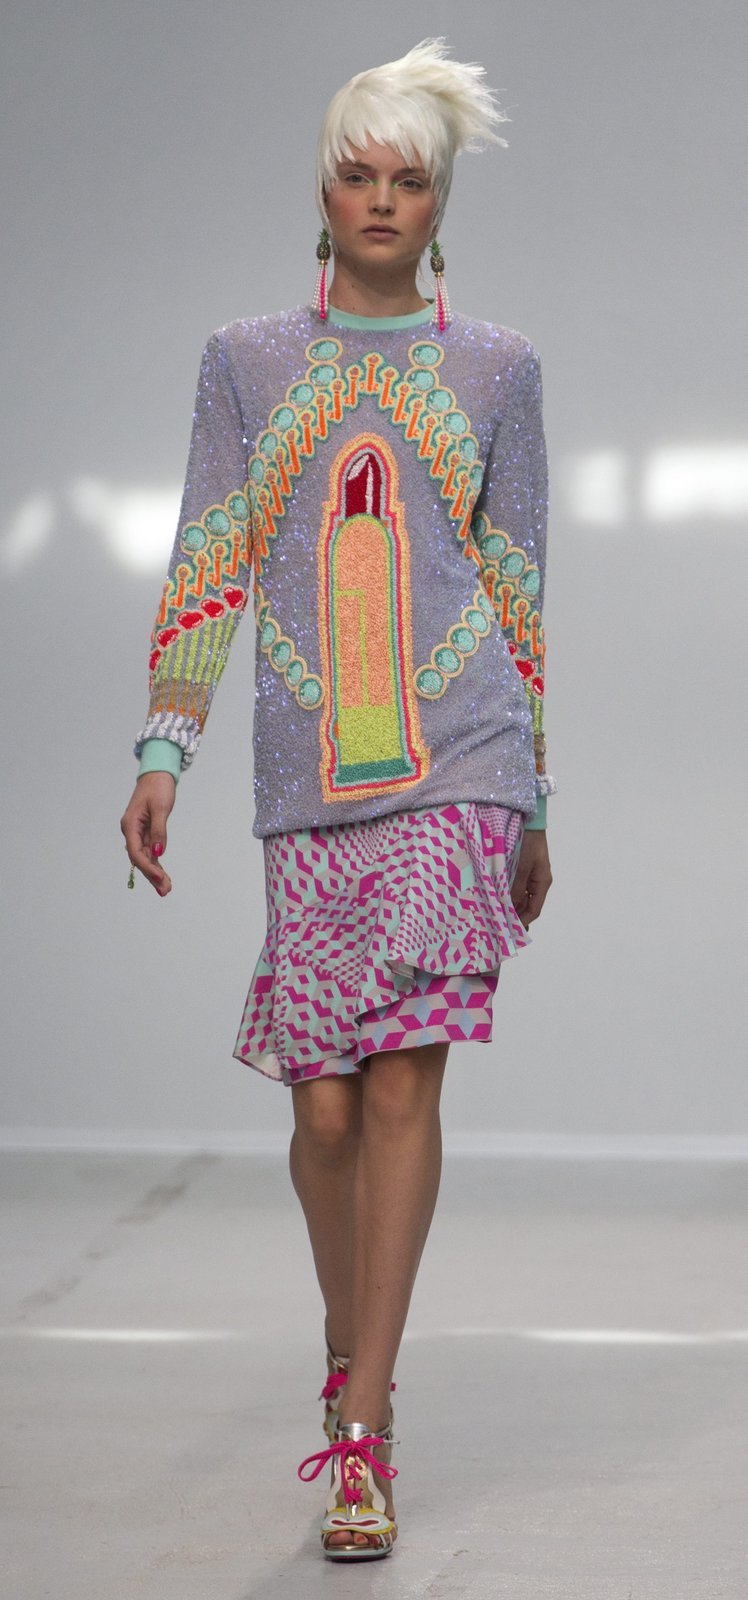 Kolekce indického módního návrháře Manishe Arory, kterému přezdívají „indický John Galliano“.